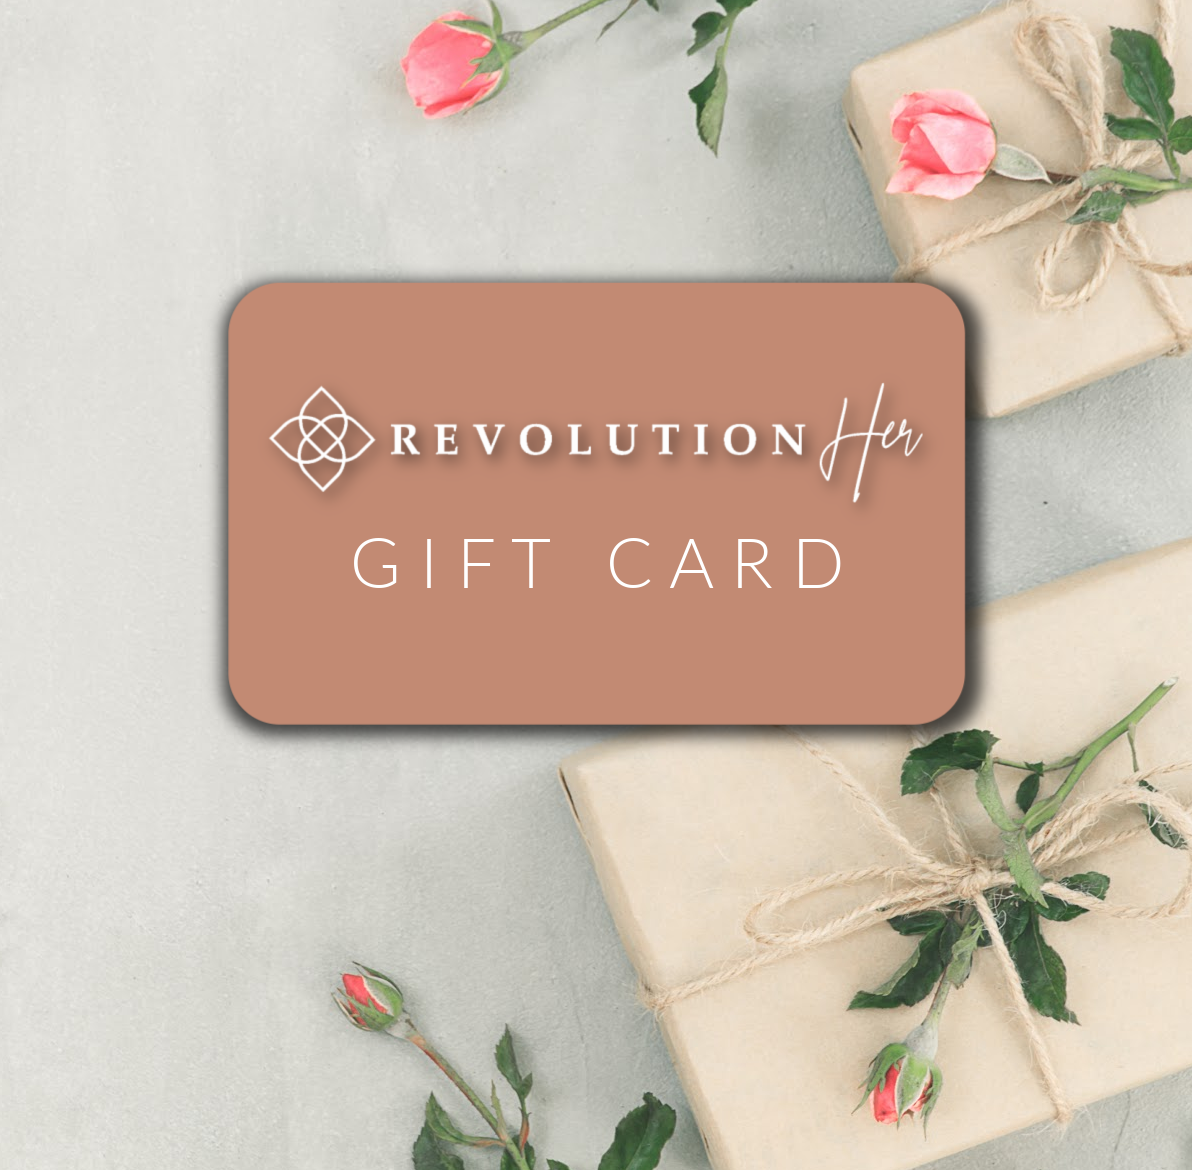 RevolutionHer Gift Card